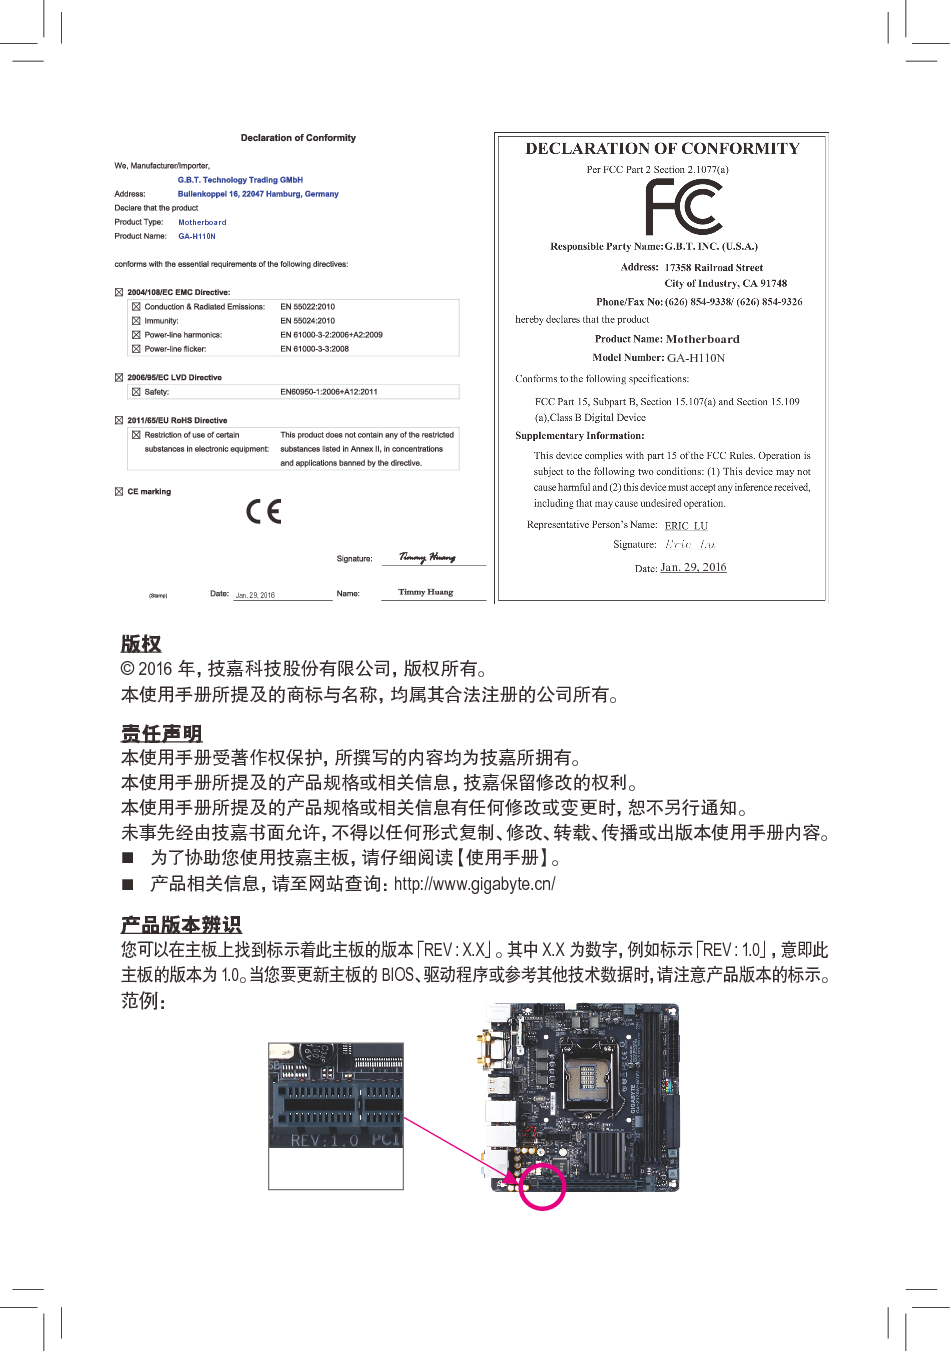 技嘉 Gigabyte GA-H110N 使用手册 第1页